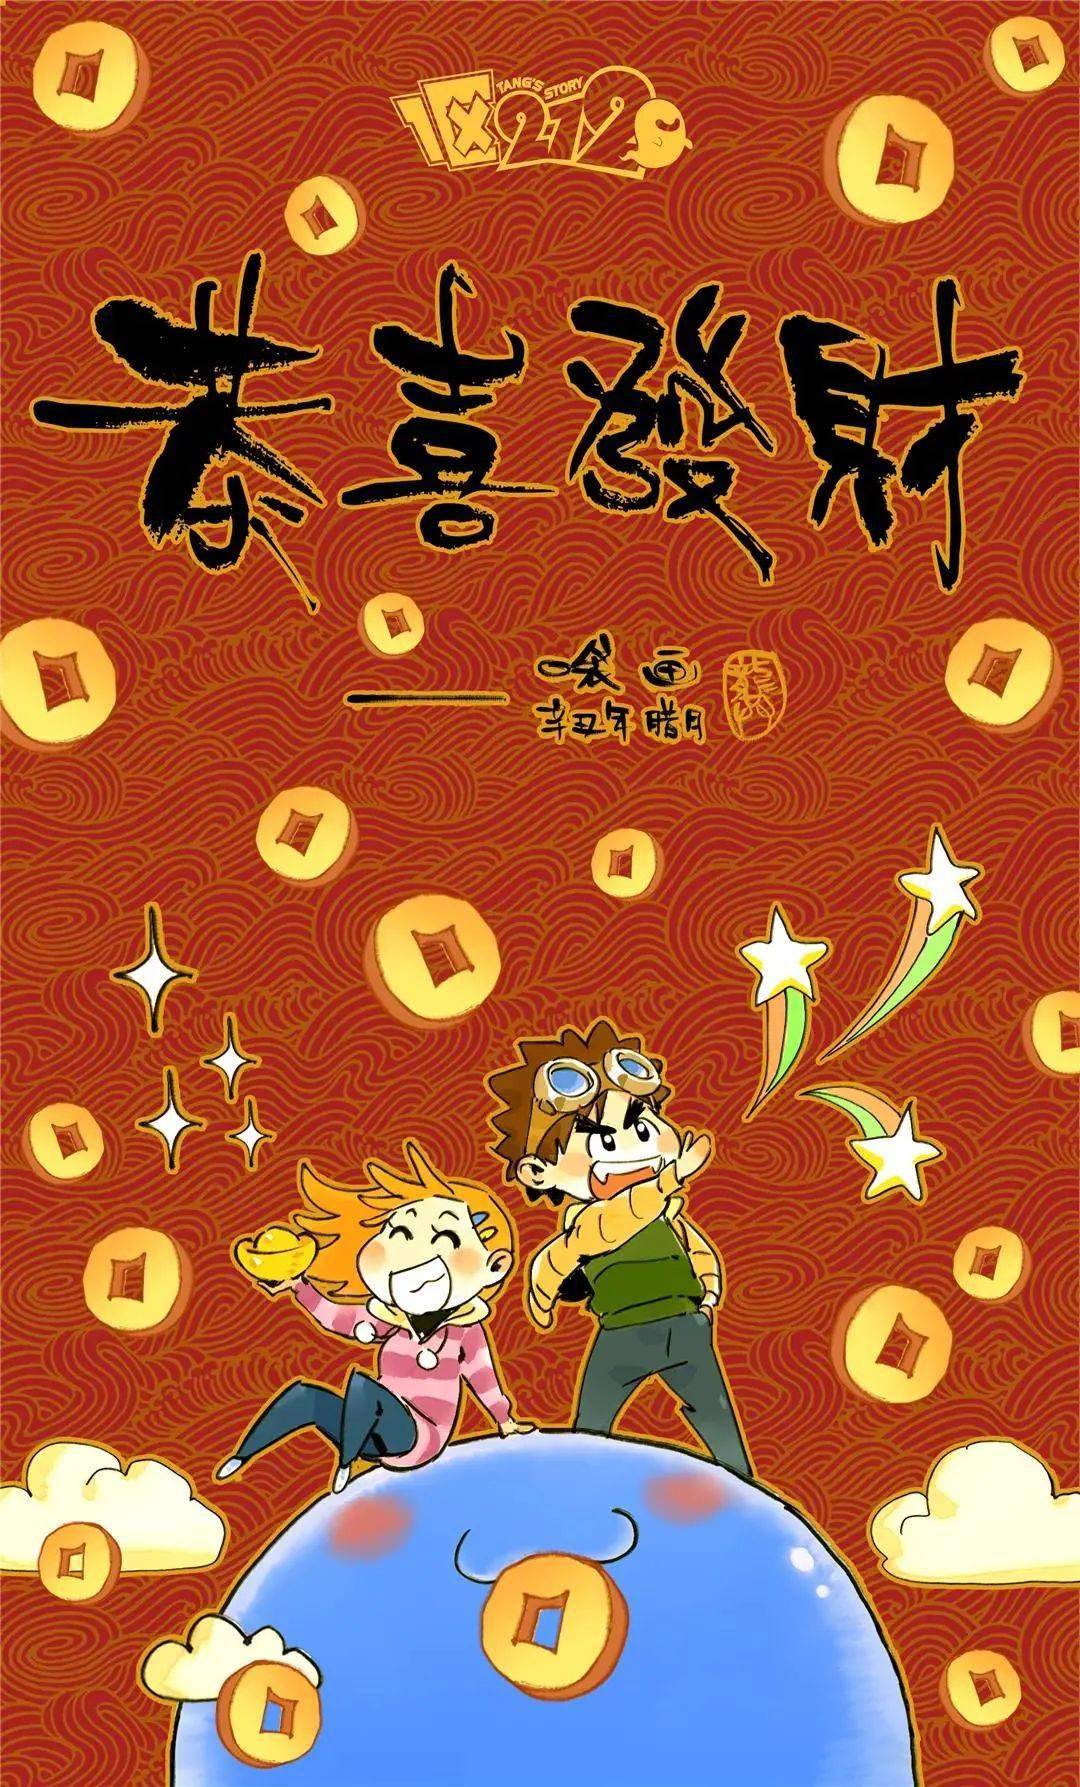 青年漫画家虎年贺新春,看完又多了一些“喜欢上海的理由”插图16